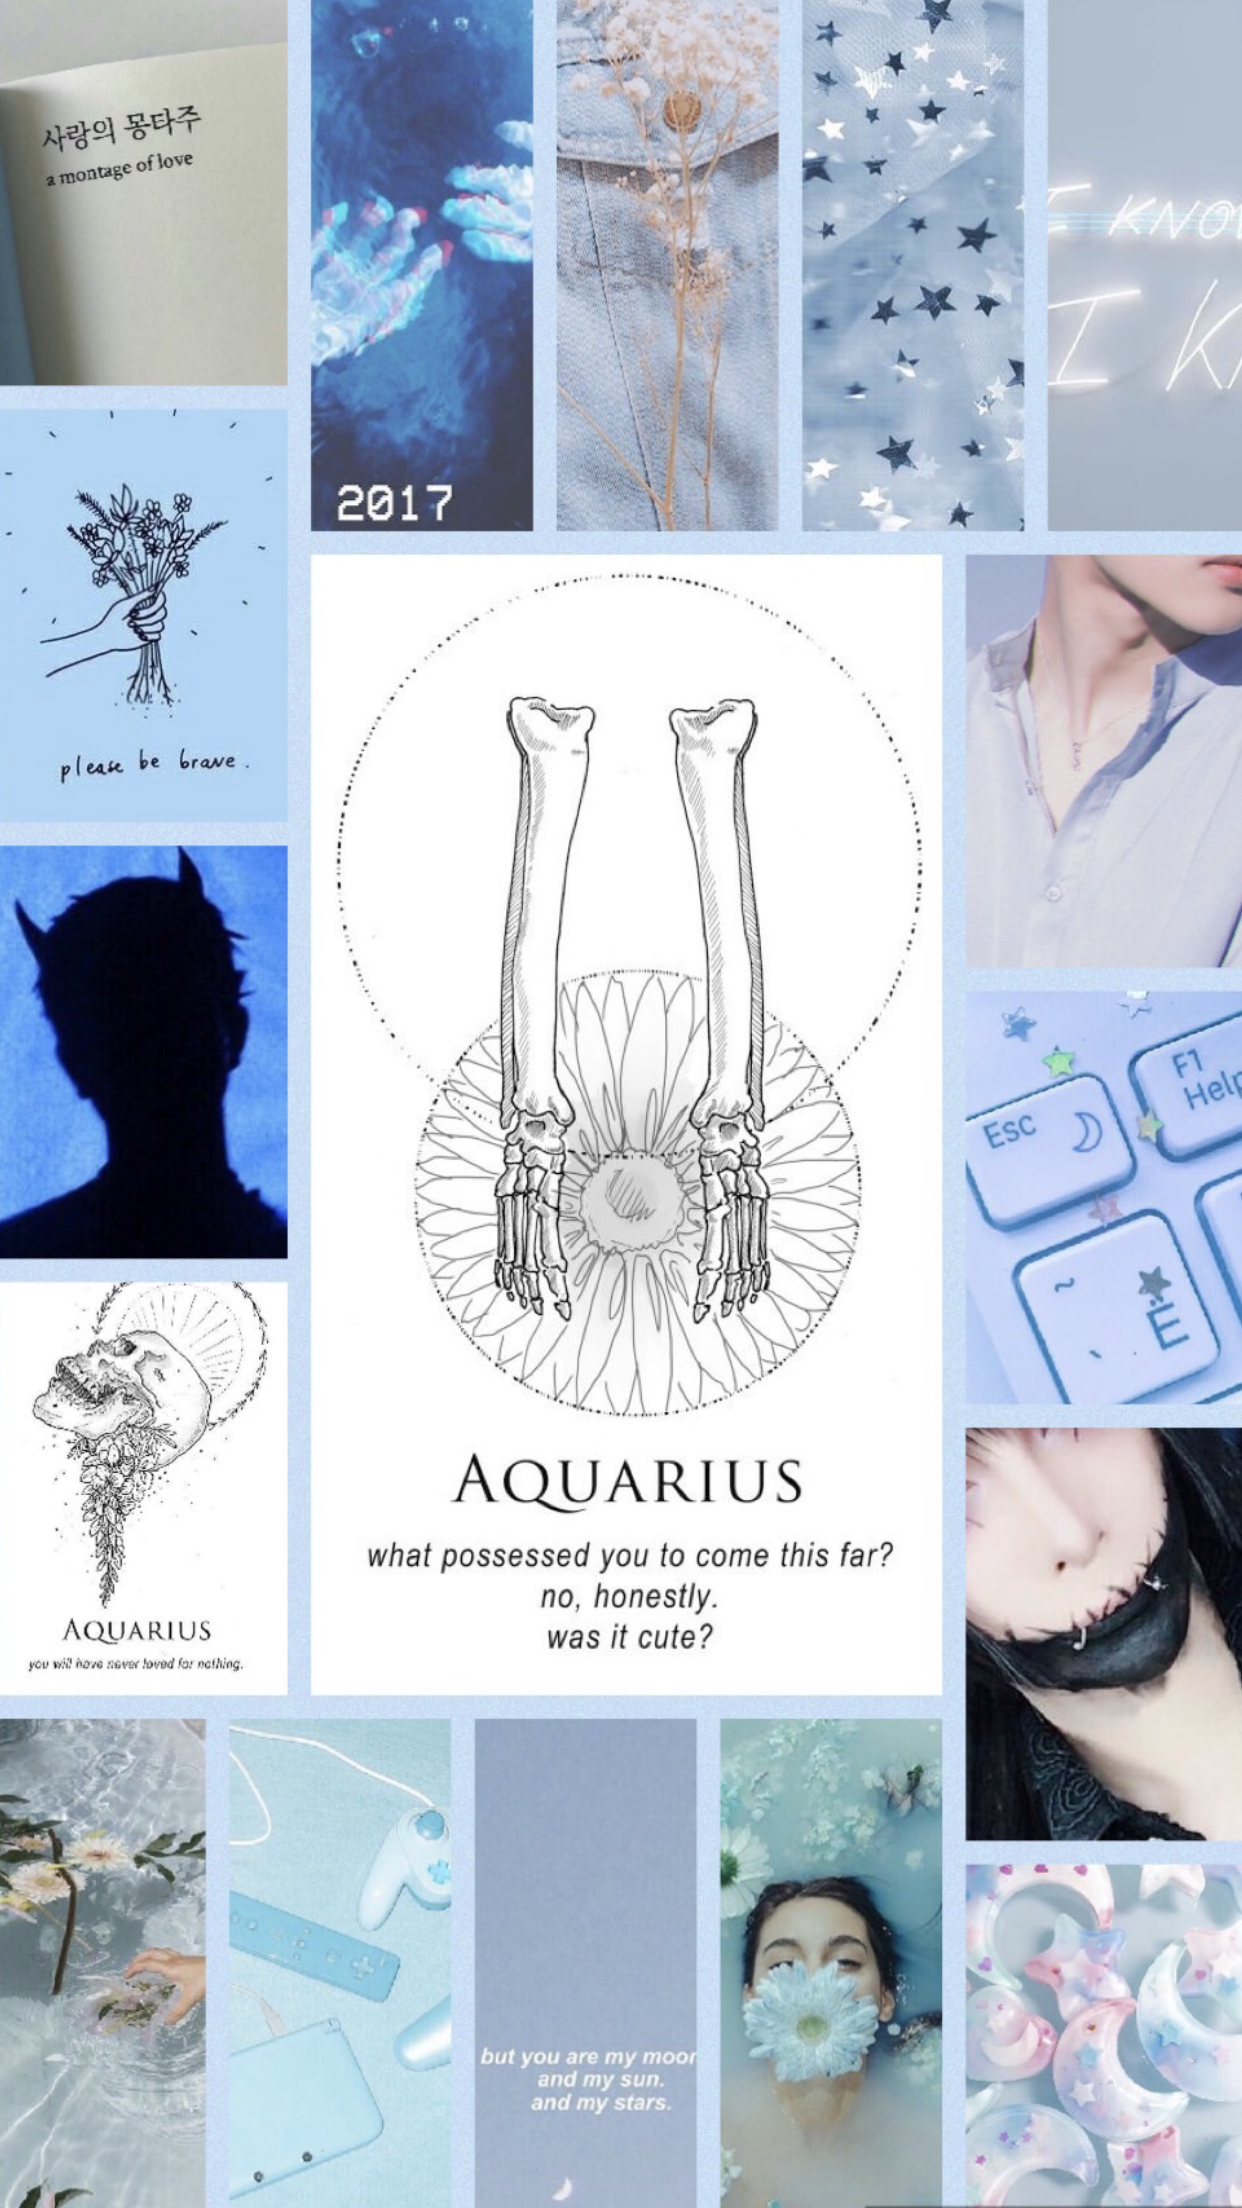 Aquarius aesthetic wallpaper. Aquarius aesthetic, Zodiac signs, Sun sign